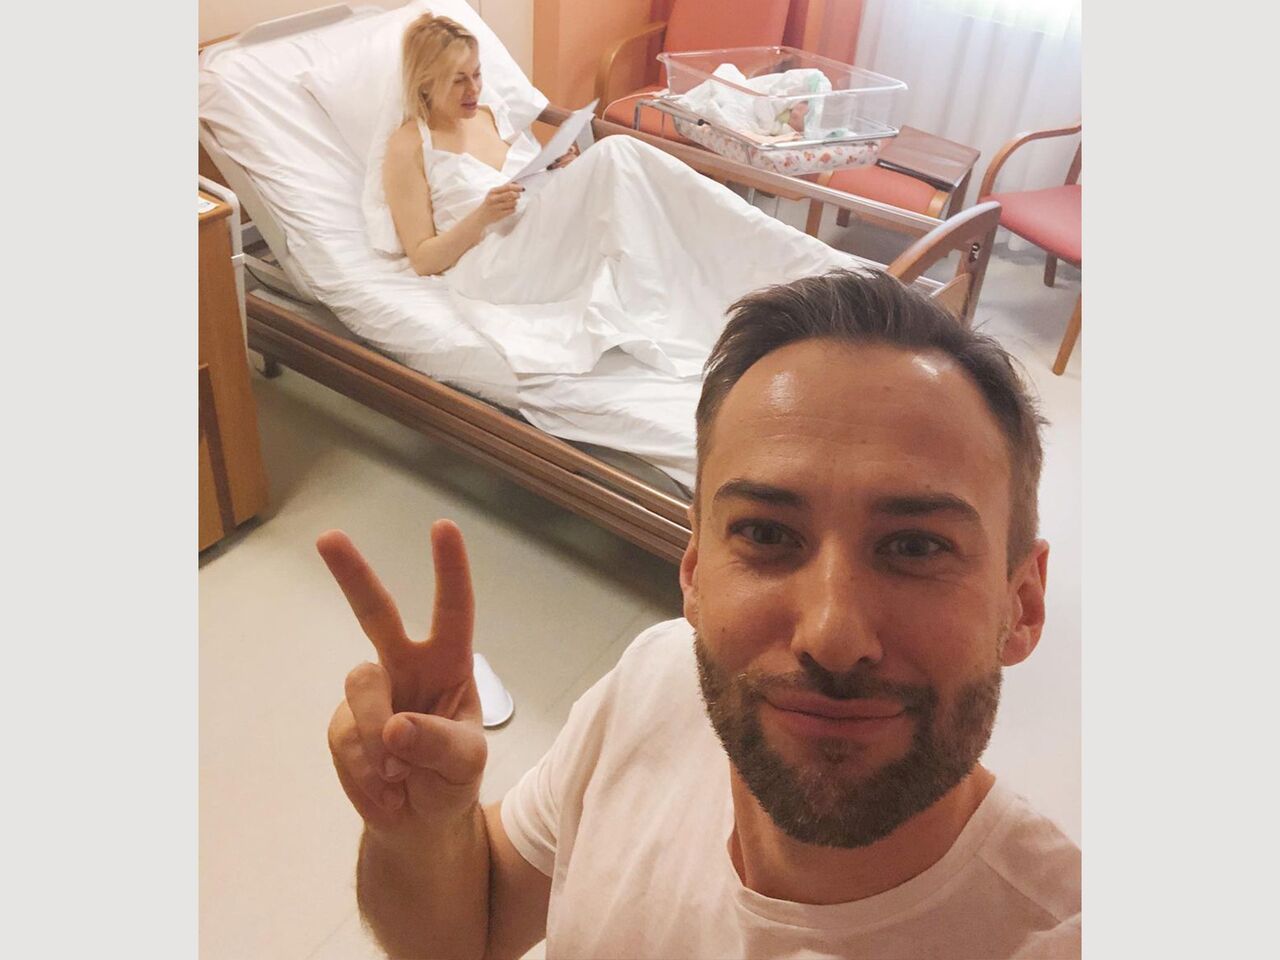 Дмитрий Шепелев опубликовал снимки возлюбленной из больницы: ТВ и радио:  Интернет и СМИ: Lenta.ru